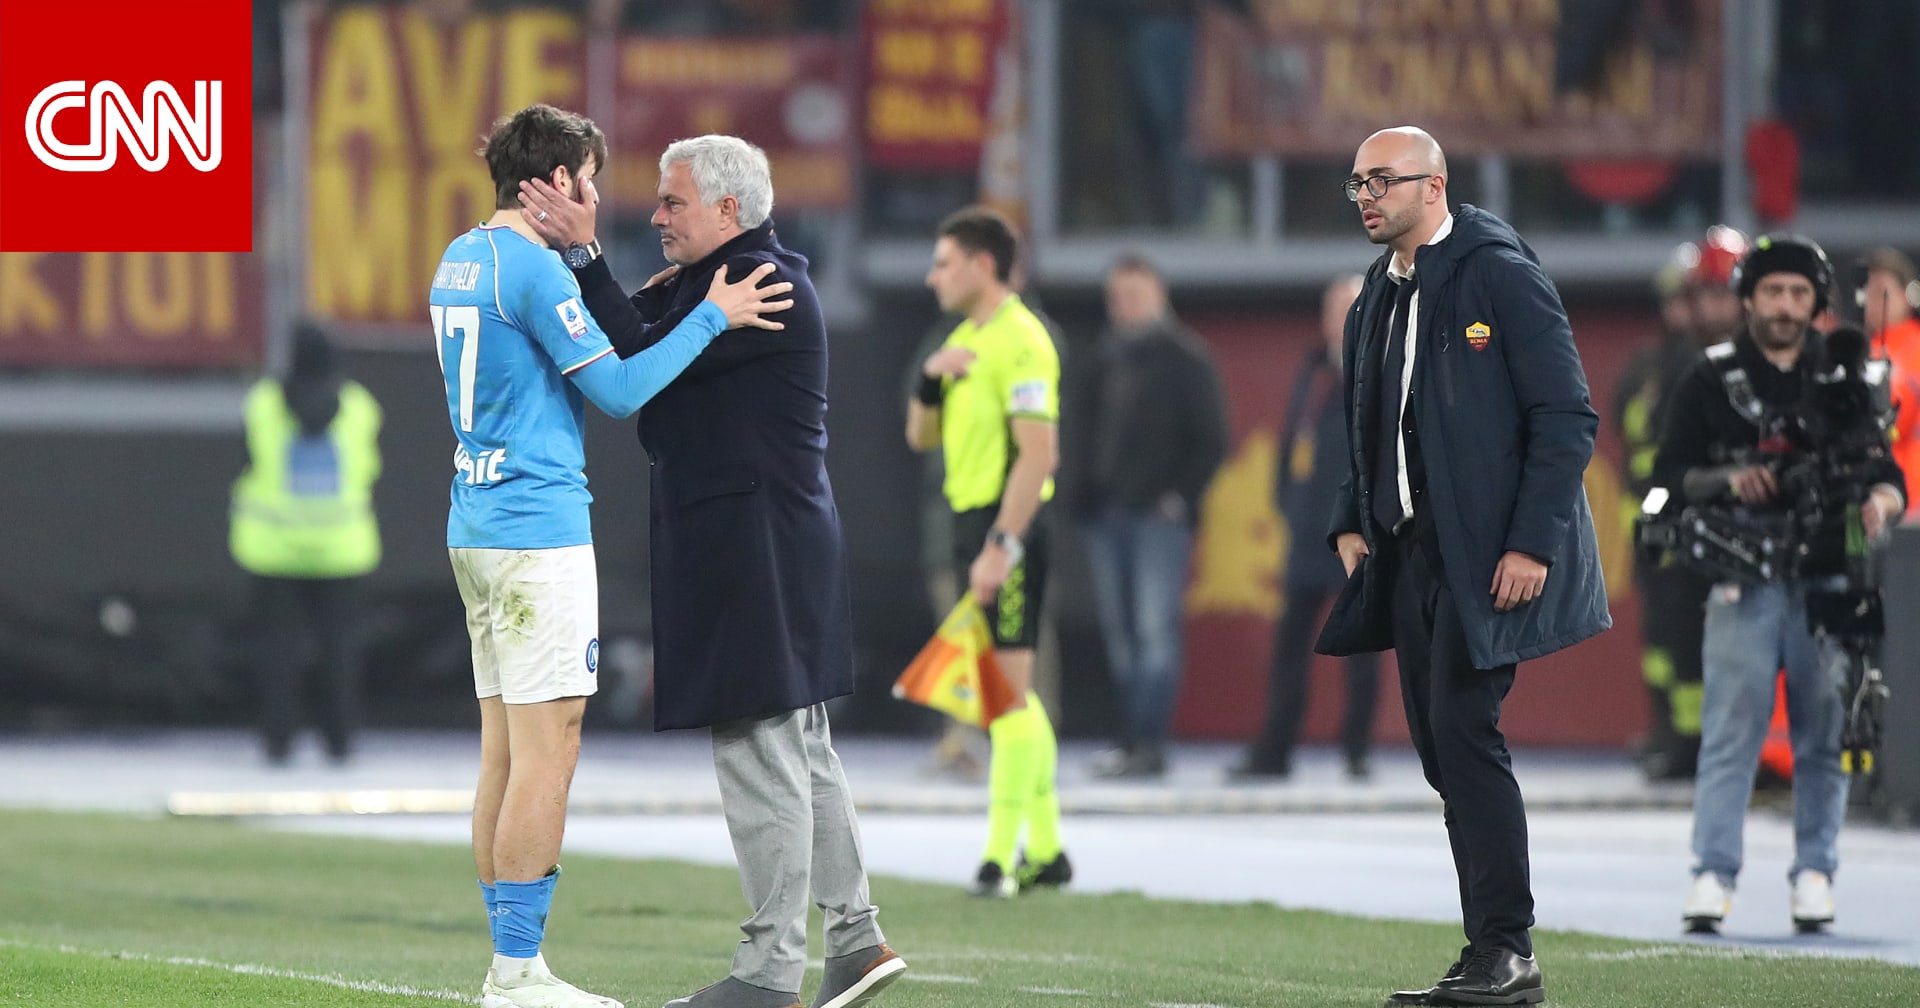 مُشادة كلامية بين جوزيه مورينيو ولاعب المنافس خلال مباراة في الدوري الإيطالي